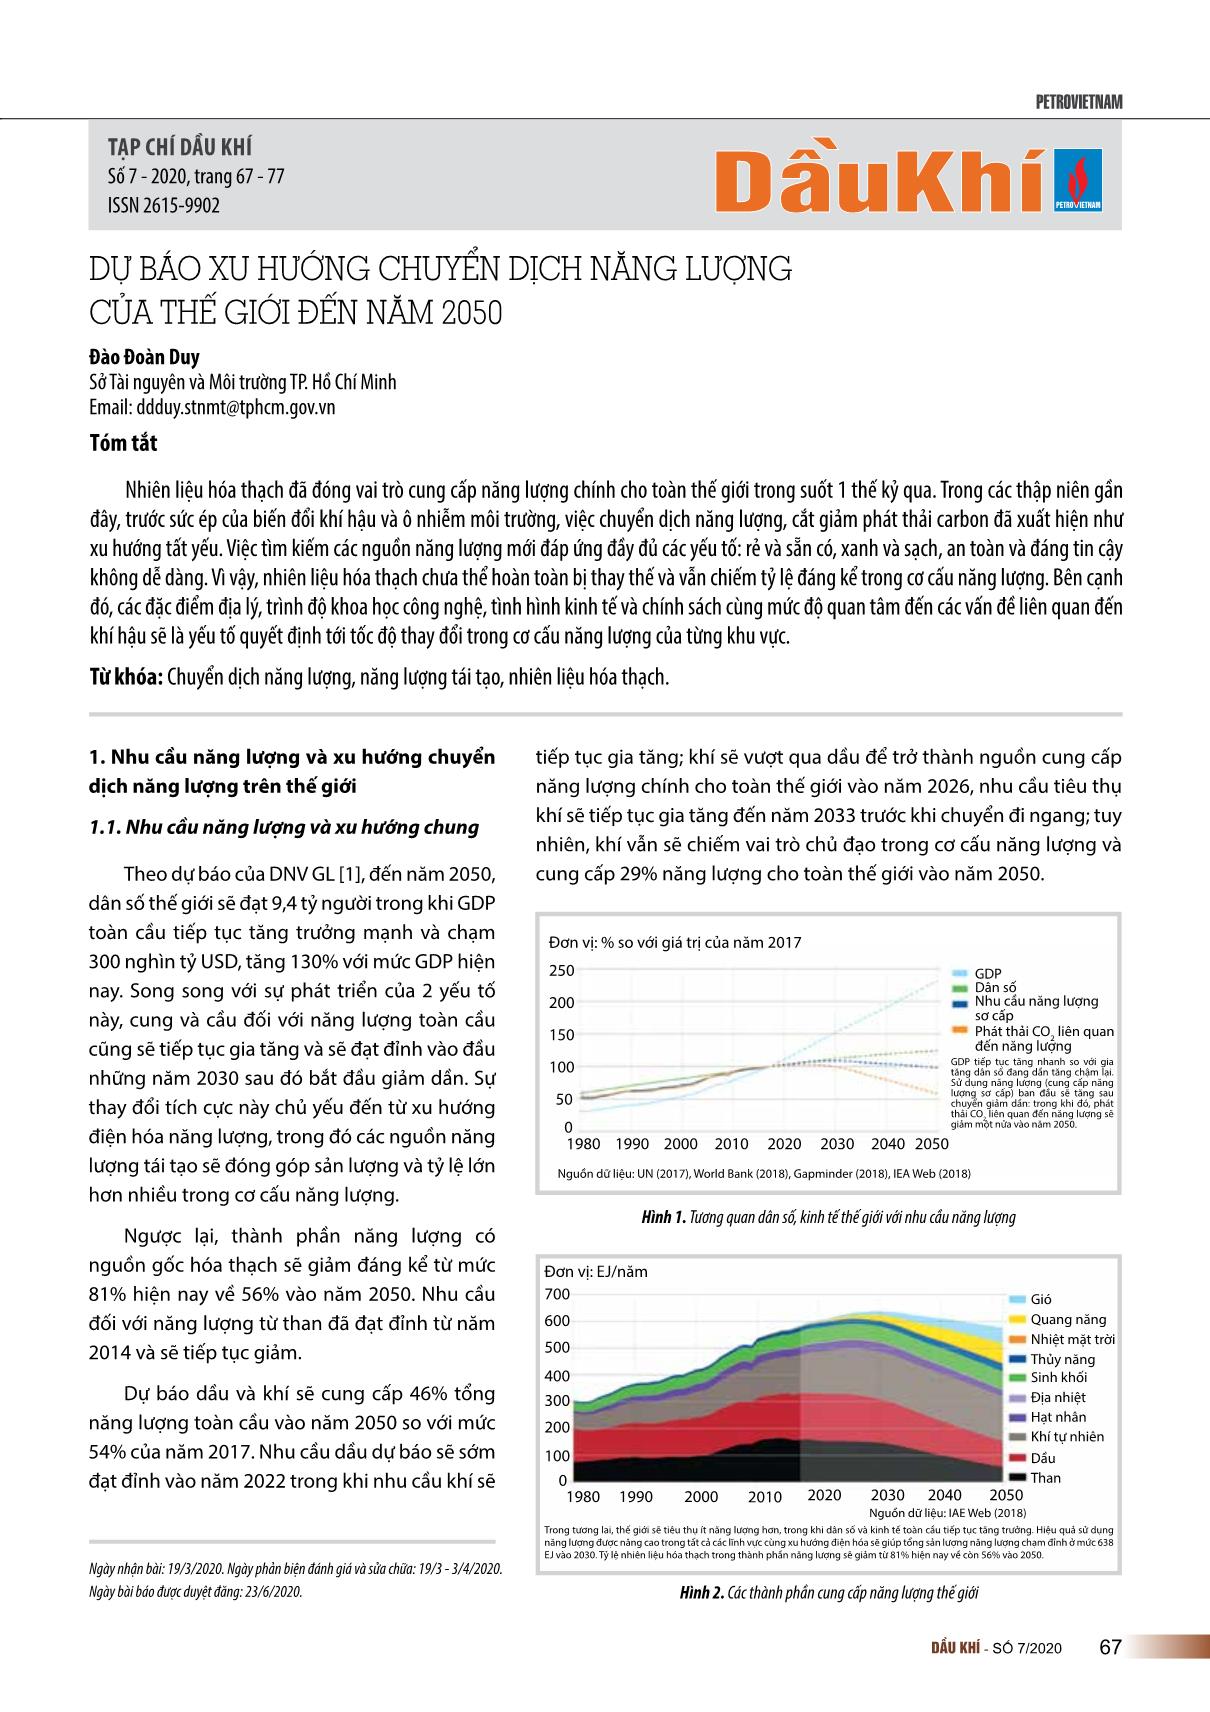 Dự báo xu hướng chuyển dịch năng lượng của thế giới đến năm 2050 trang 1